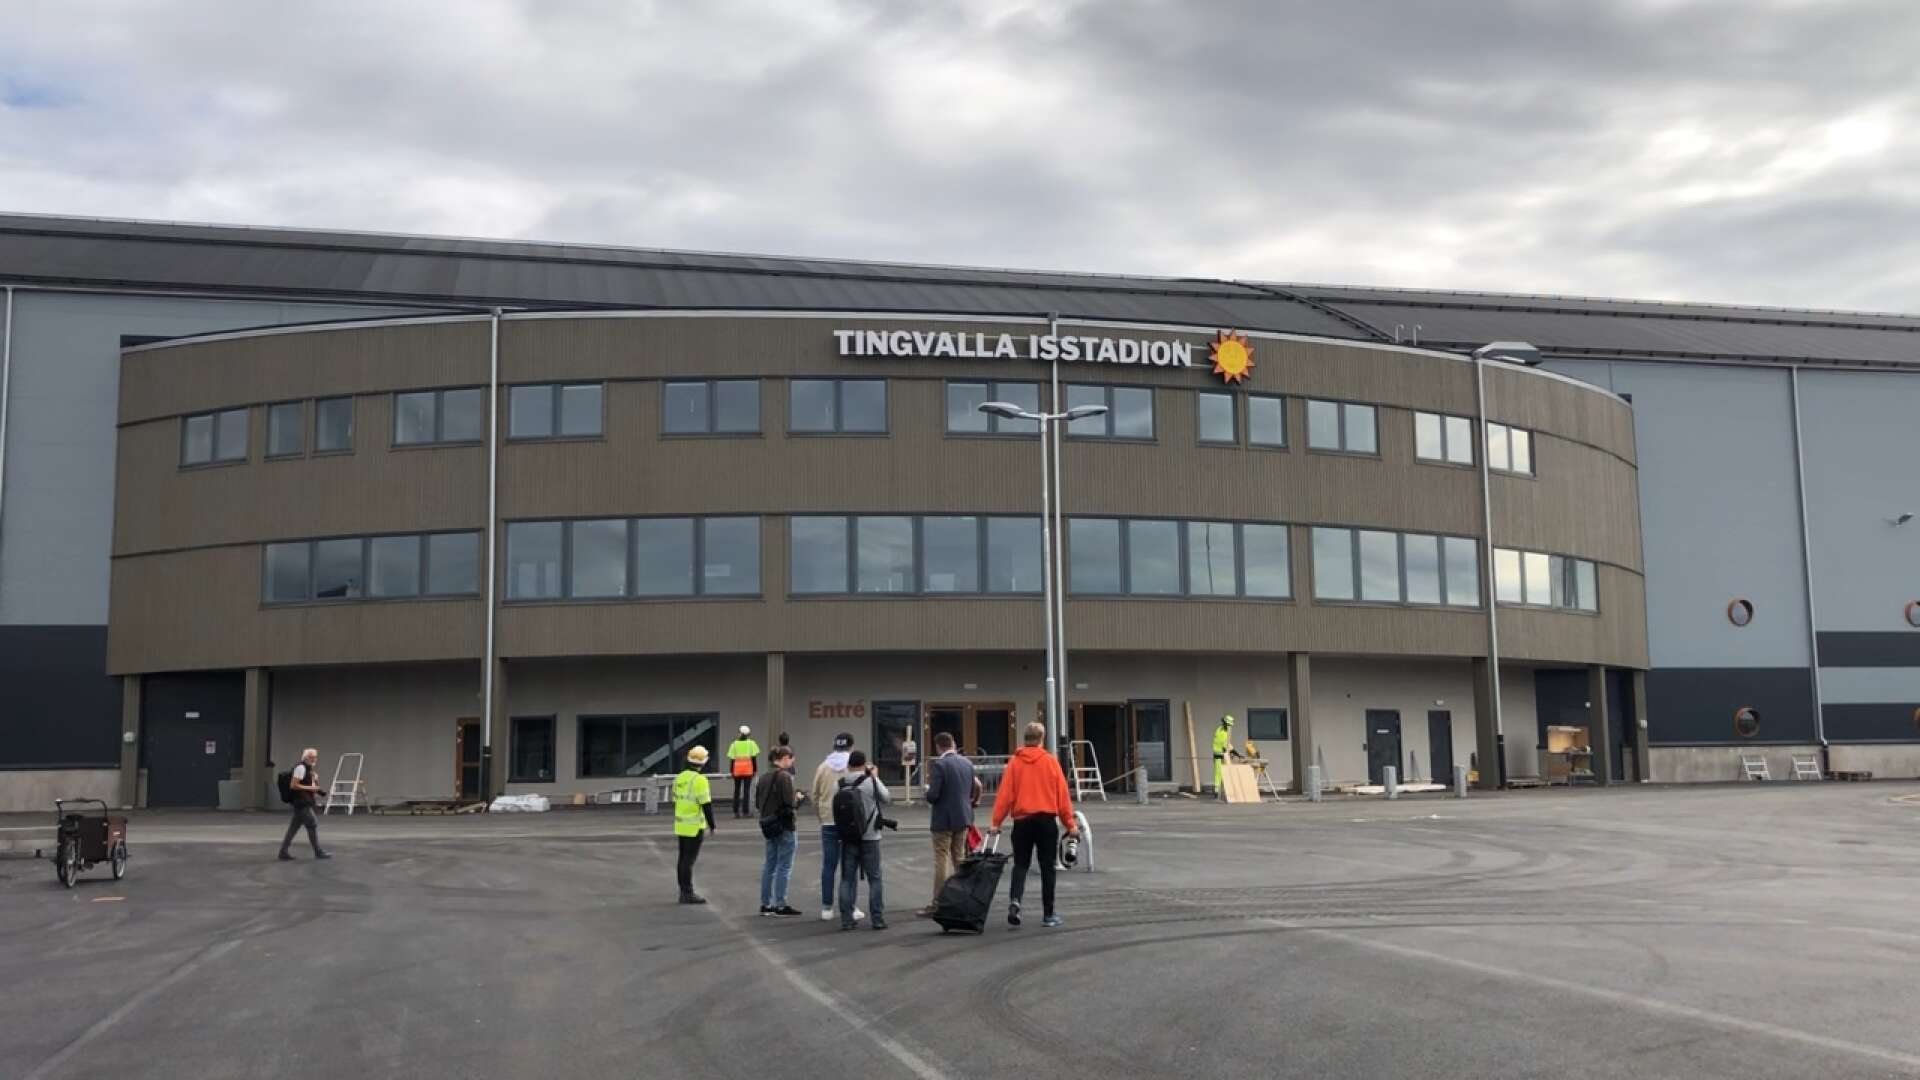 Tingvalla isstadion är bra som den är. Att drömma om OS är långt ifrån bra.